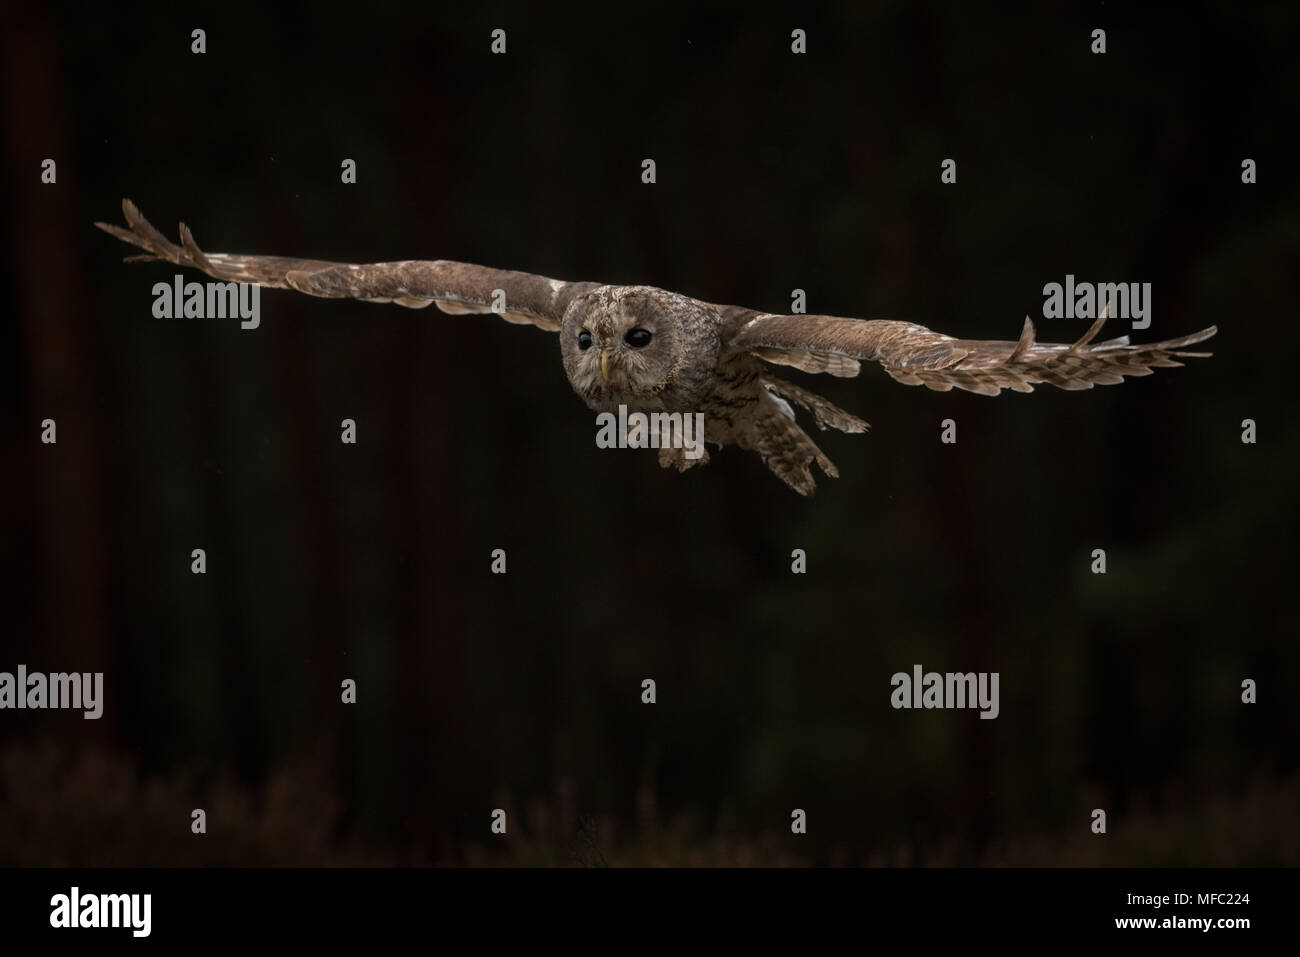 Allocco sul volo / Flying owl / marrone owl Foto Stock